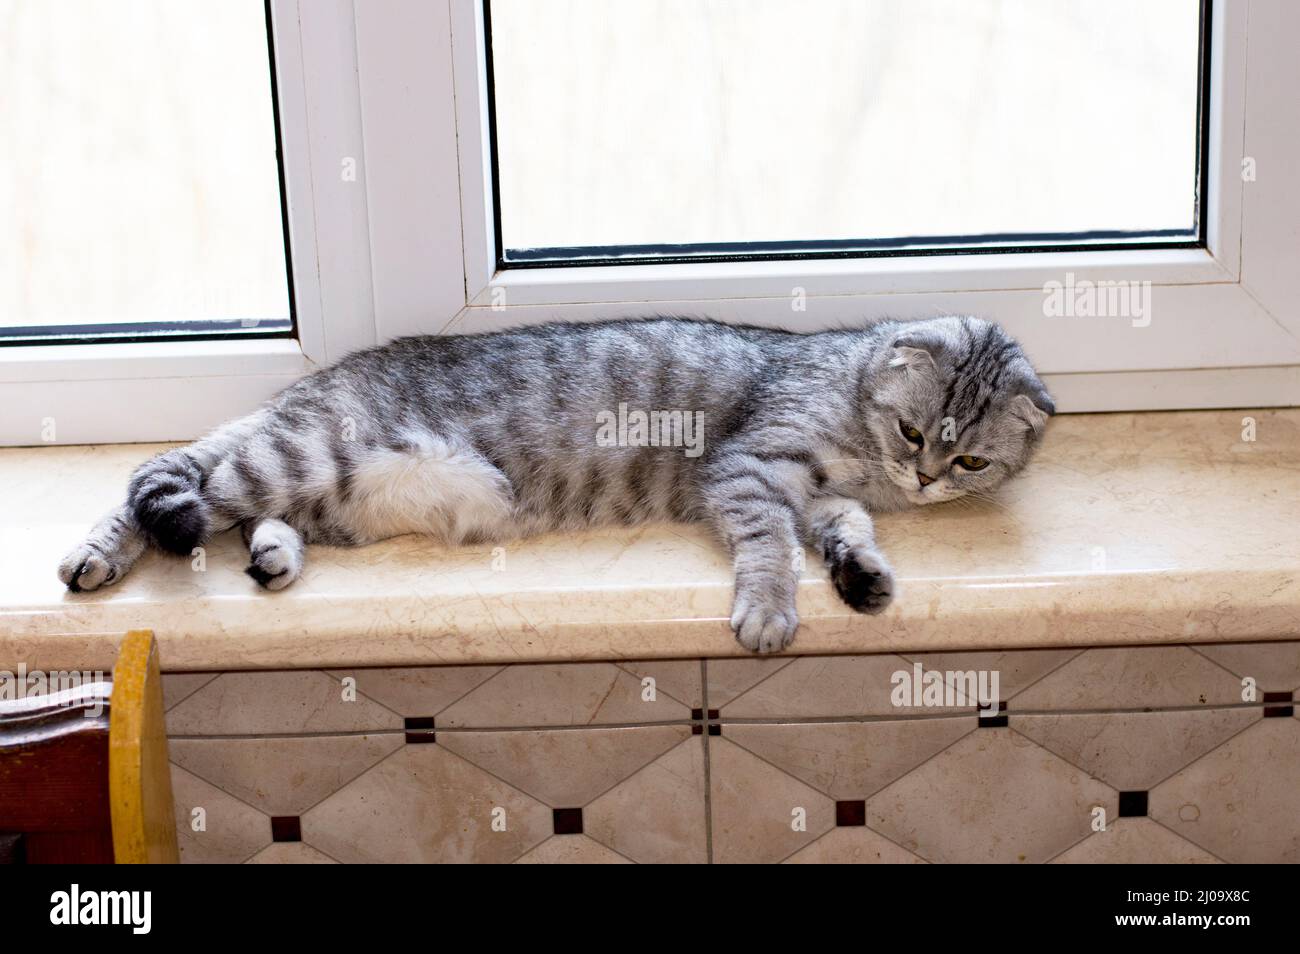 Le chat écossais est couché sur le rebord de la fenêtre, de beaux chats domestiques généalogiques, un chat dans la maison, un chat dans la cuisine Banque D'Images